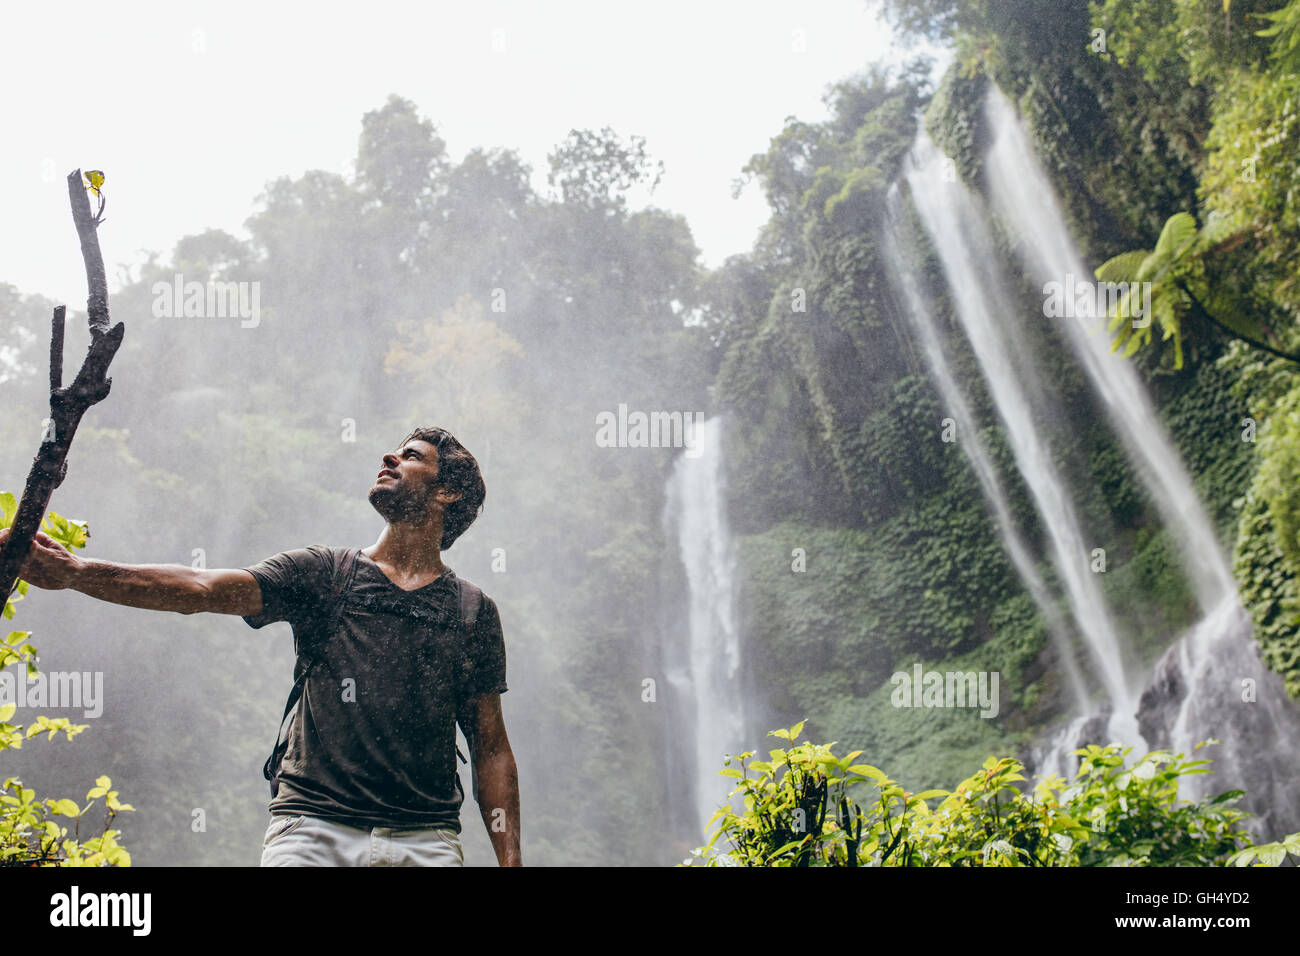 Niedrigen Winkel Schuss der junge Mann in der Nähe von einem Wasserfall im Wald stehen und wegsehen. Männliche Wanderer genießen in der Natur mit Regen. Stockfoto